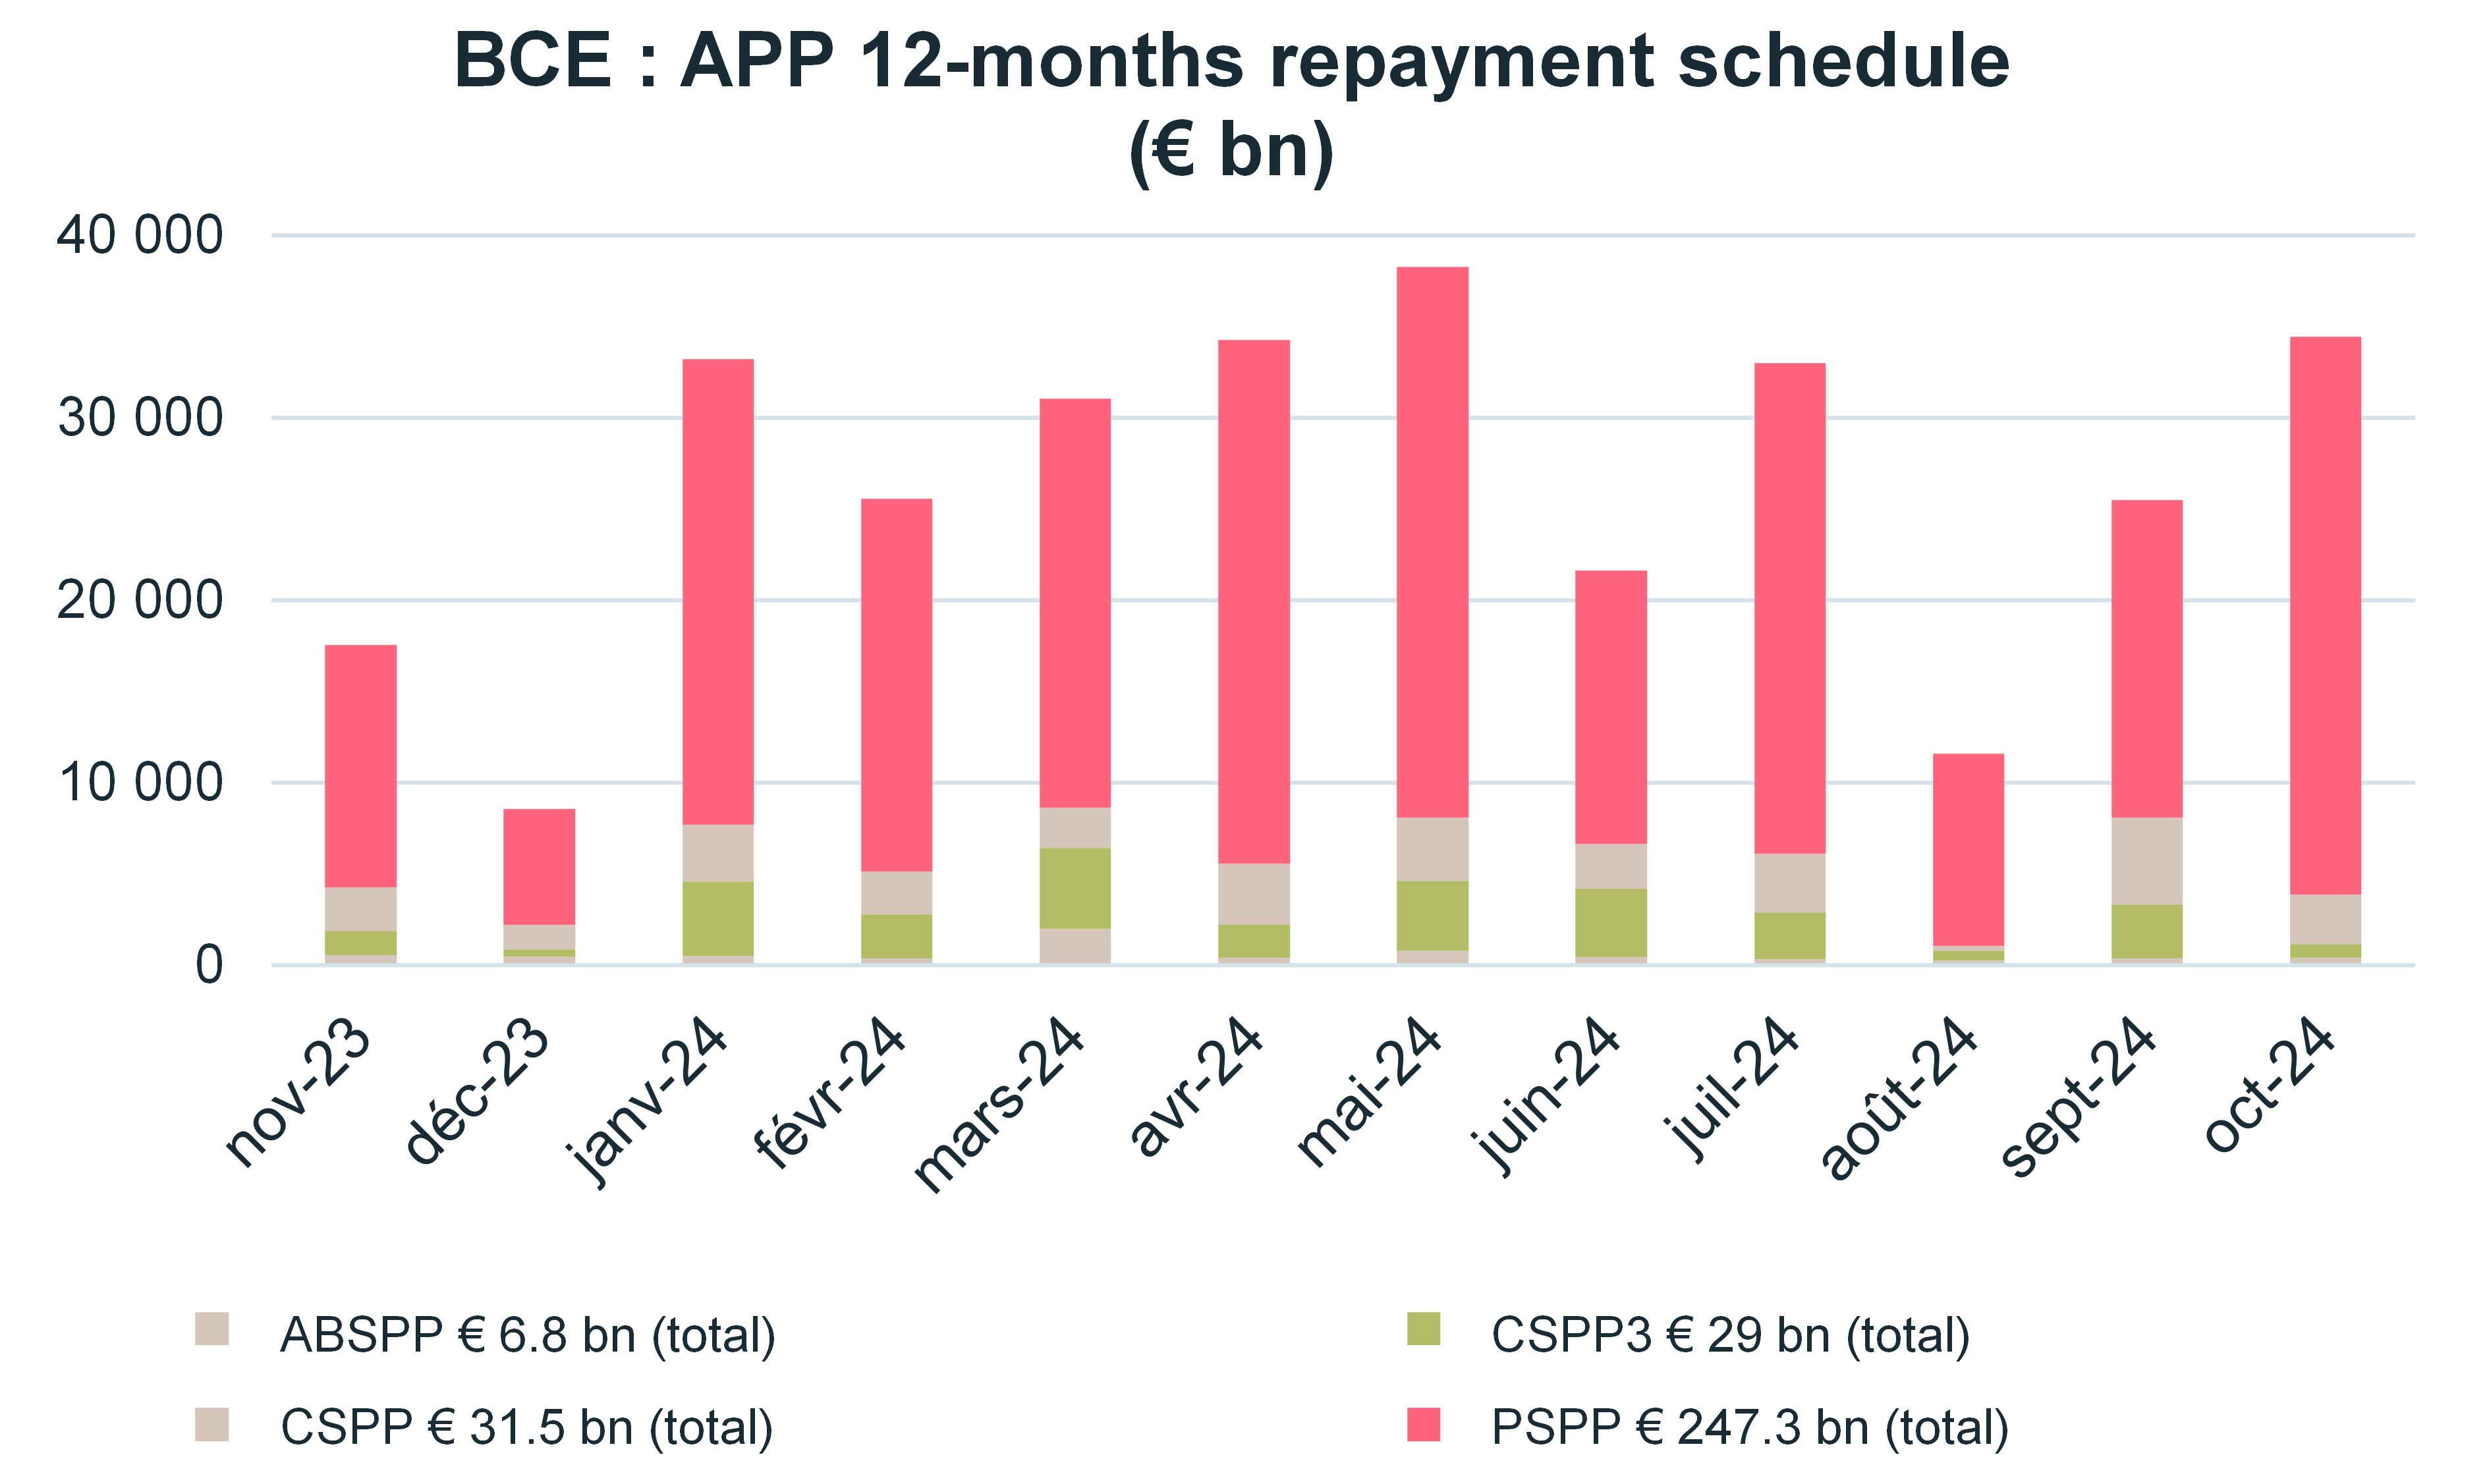 bpce-app-12-months-repayment-schedule-euro-bn